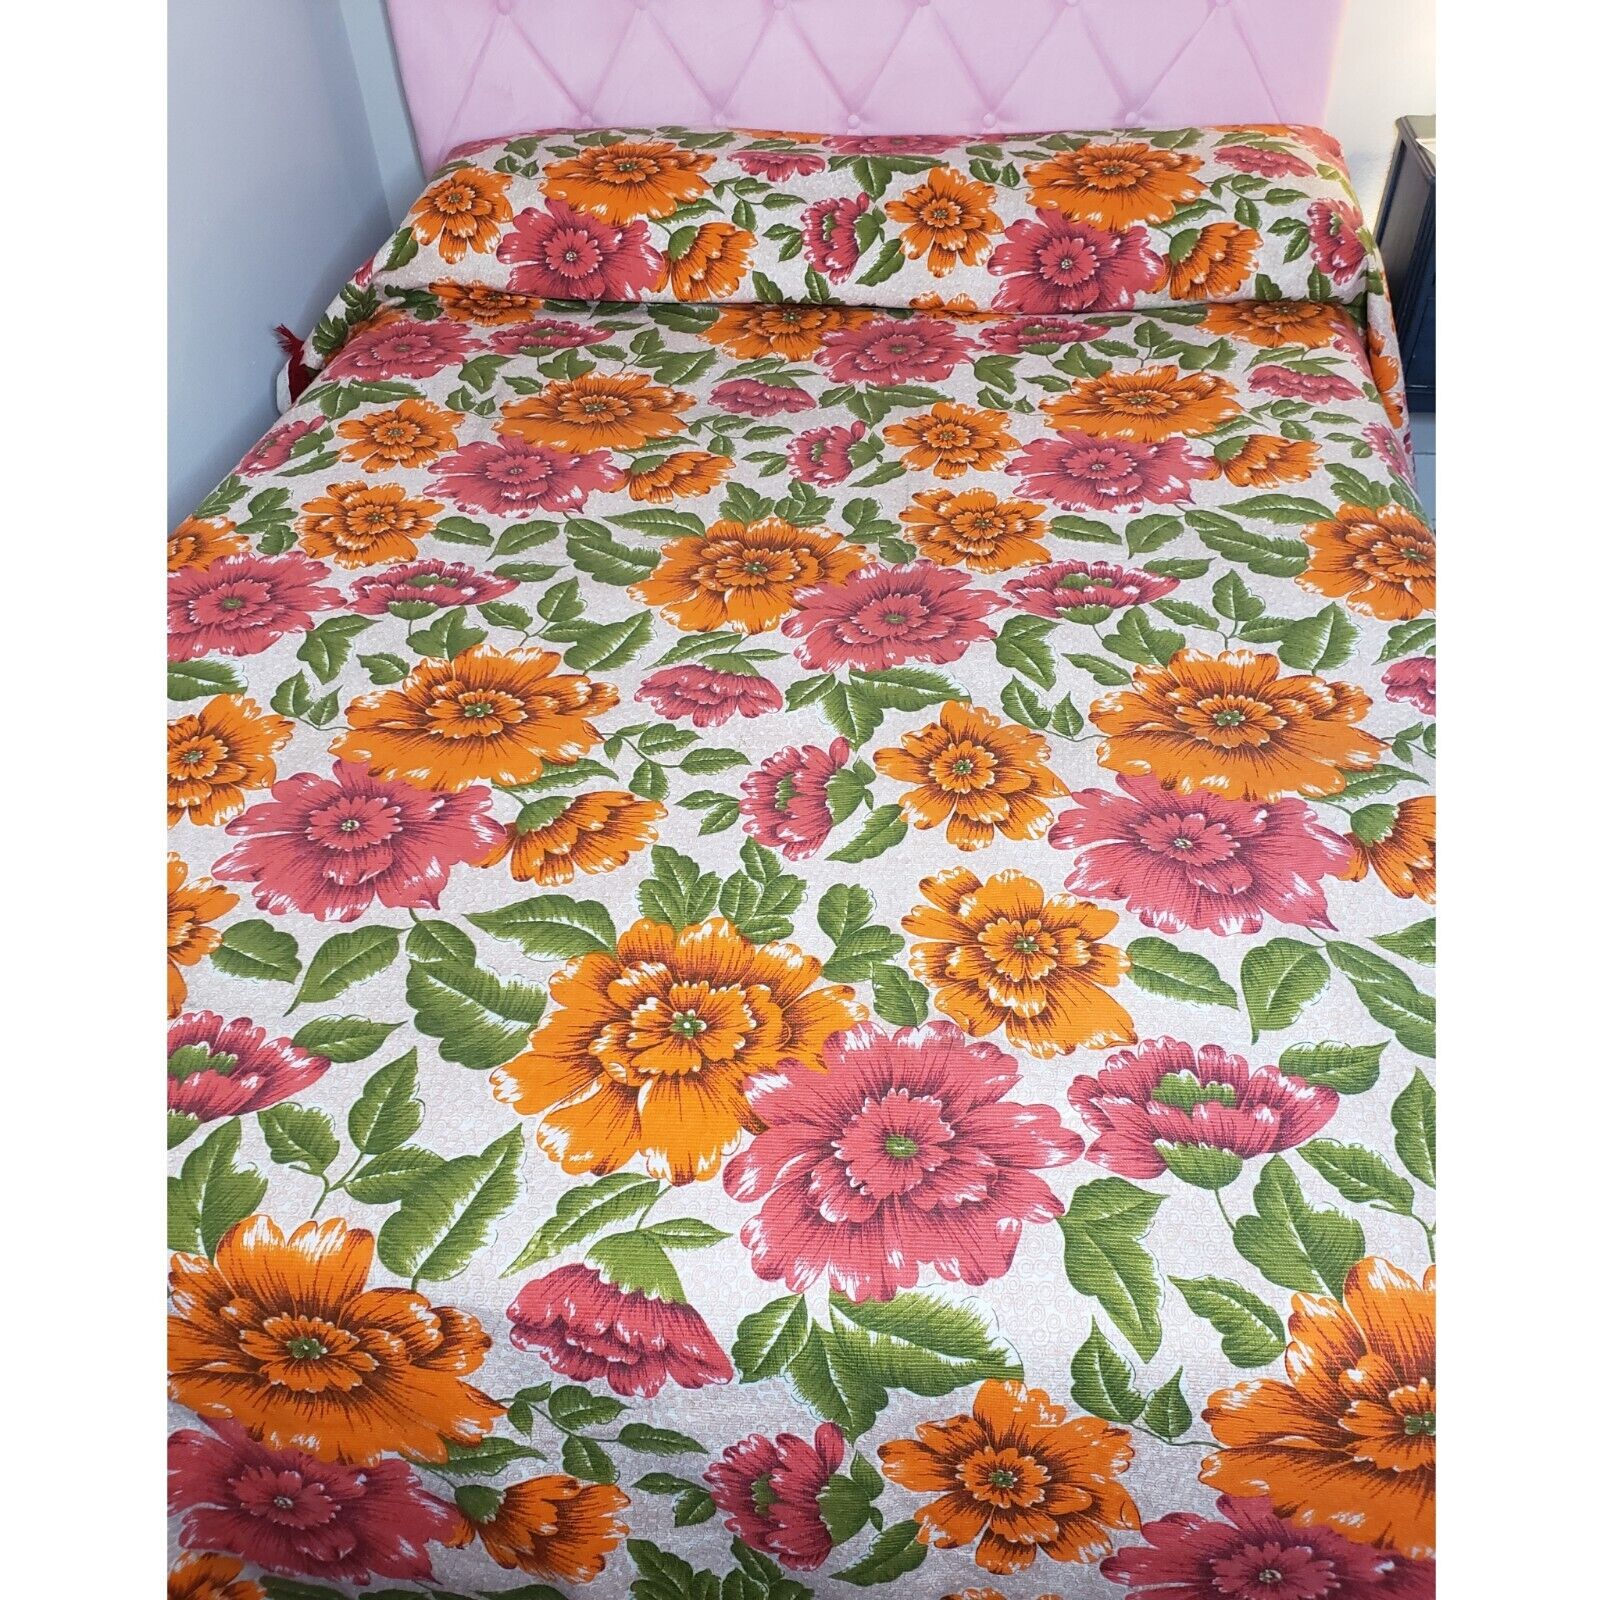 Vintage 60s 70s Orange Hot Pink Floral Bed Spread Full Size